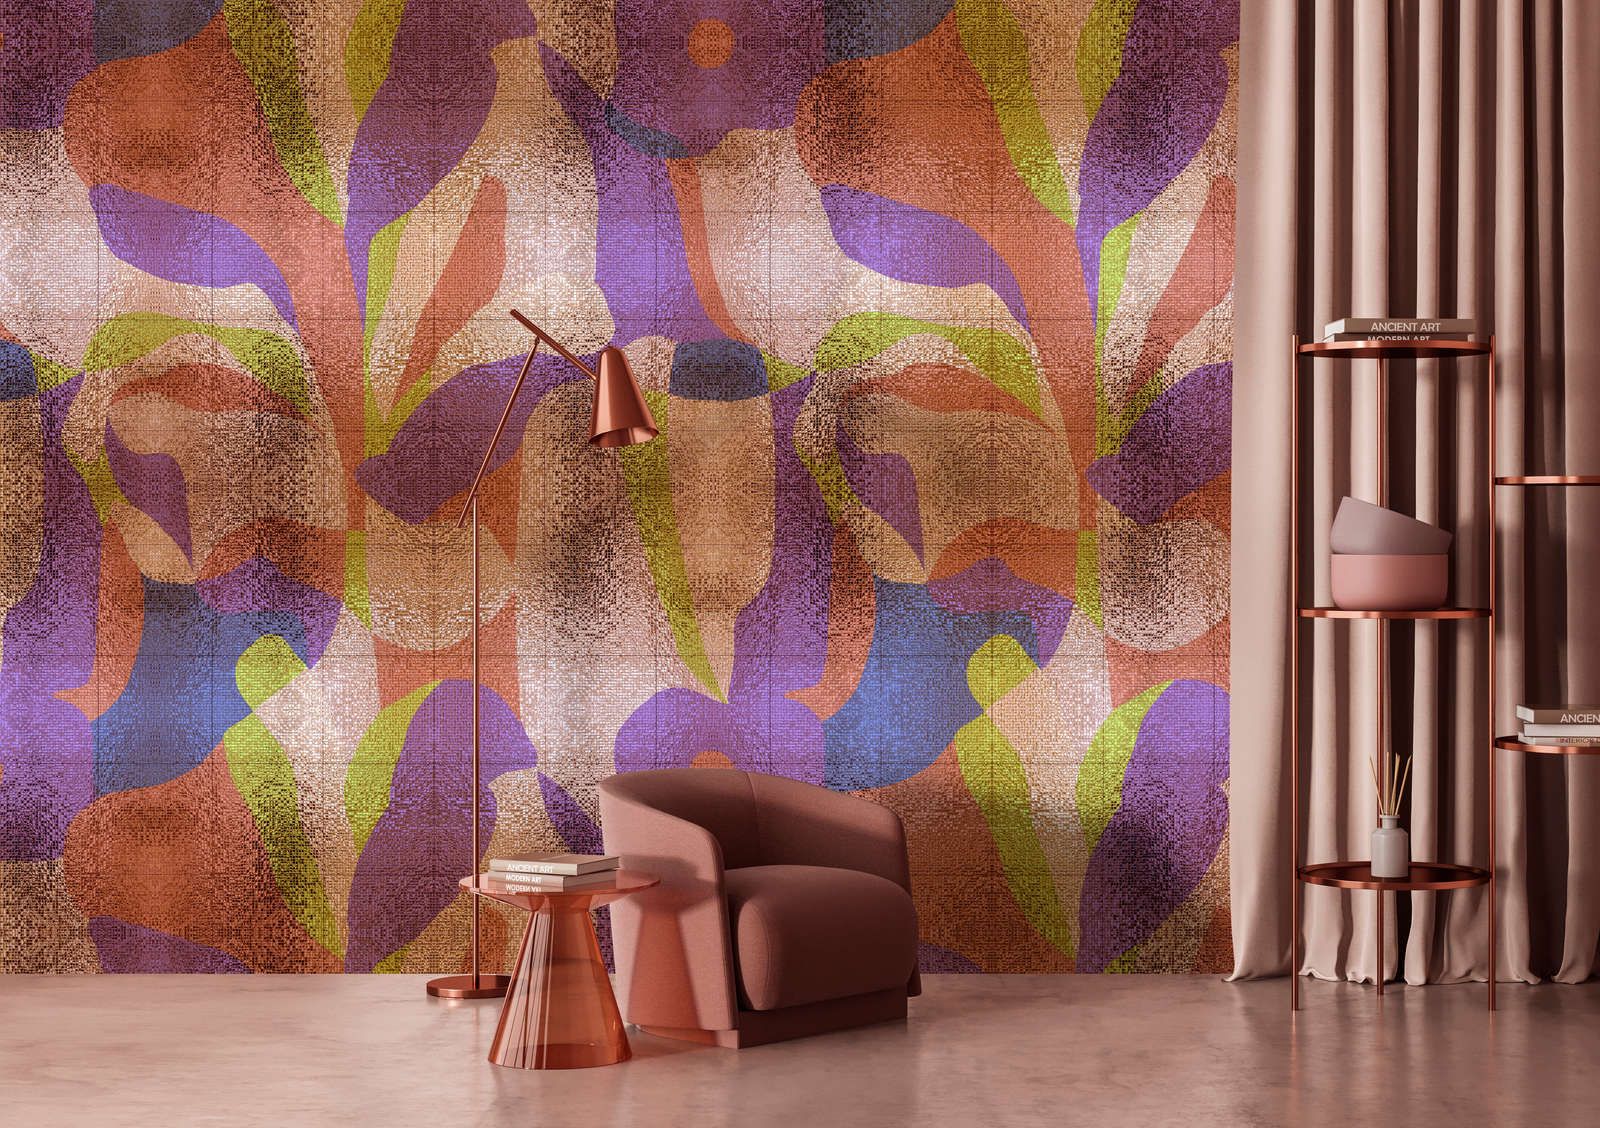             Fototapete »brillanaza« - Grafisches buntes Blätterdesign mit Mosaikstruktur – Glattes, leicht perlmutt-schimmerndes Vlies
        